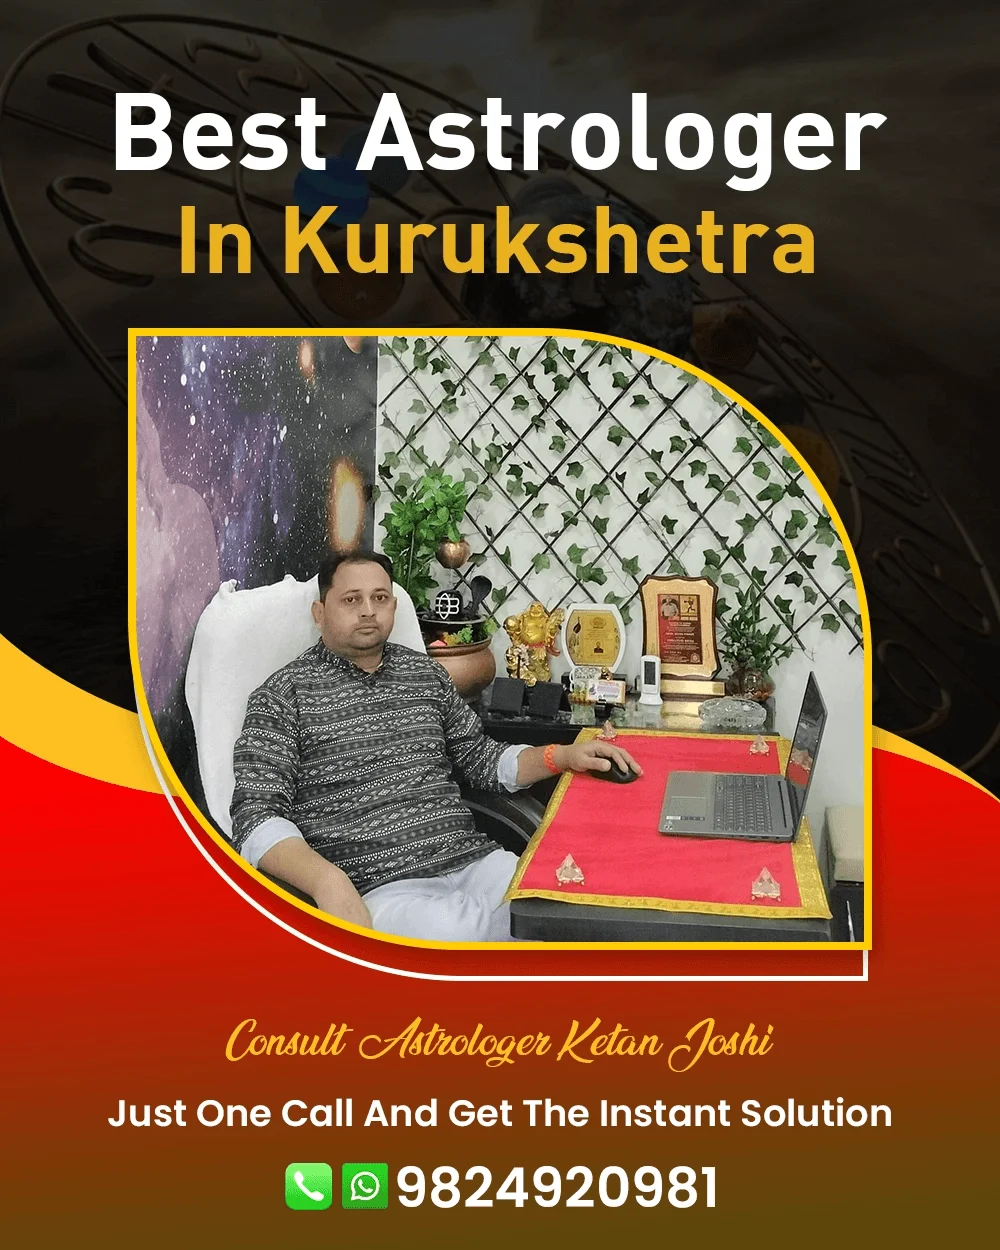 Best Astrologer In Kurukshetra